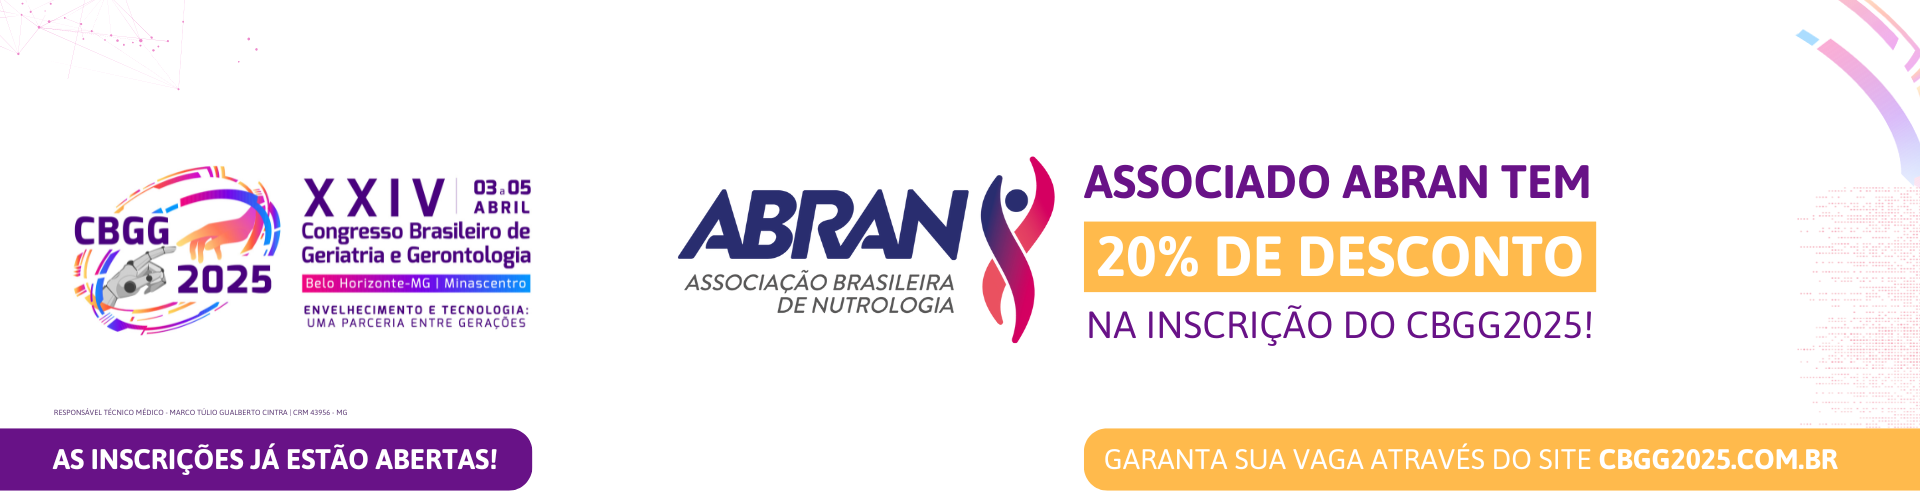 XXIV Congresso Brasileiro de Geriatria e Gerontologia